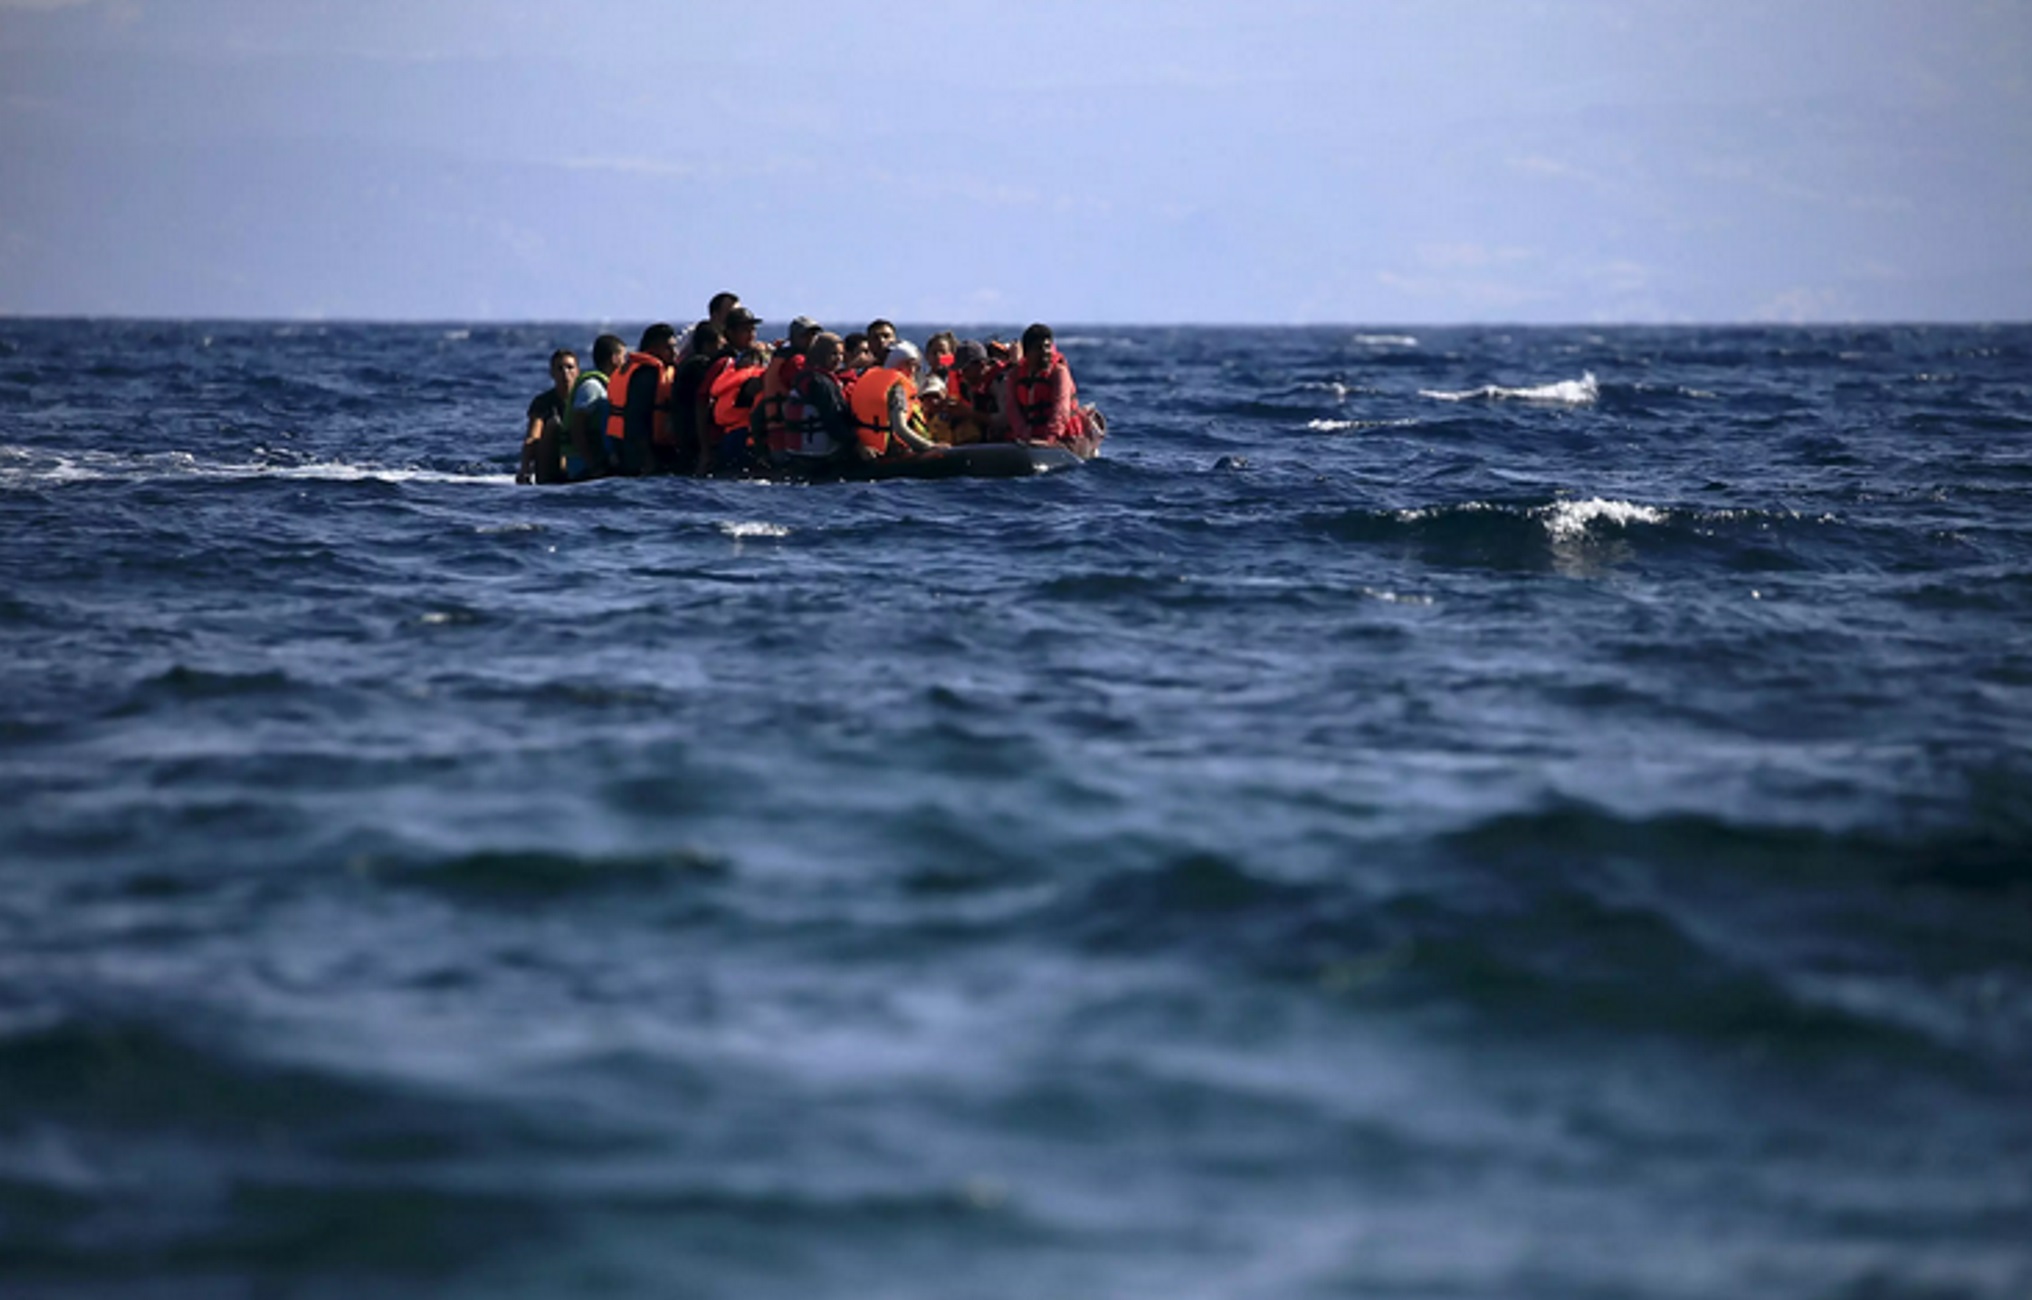 Τυνησία: Βρέθηκαν 19 πτώματα μεταναστών στην θάλασσα